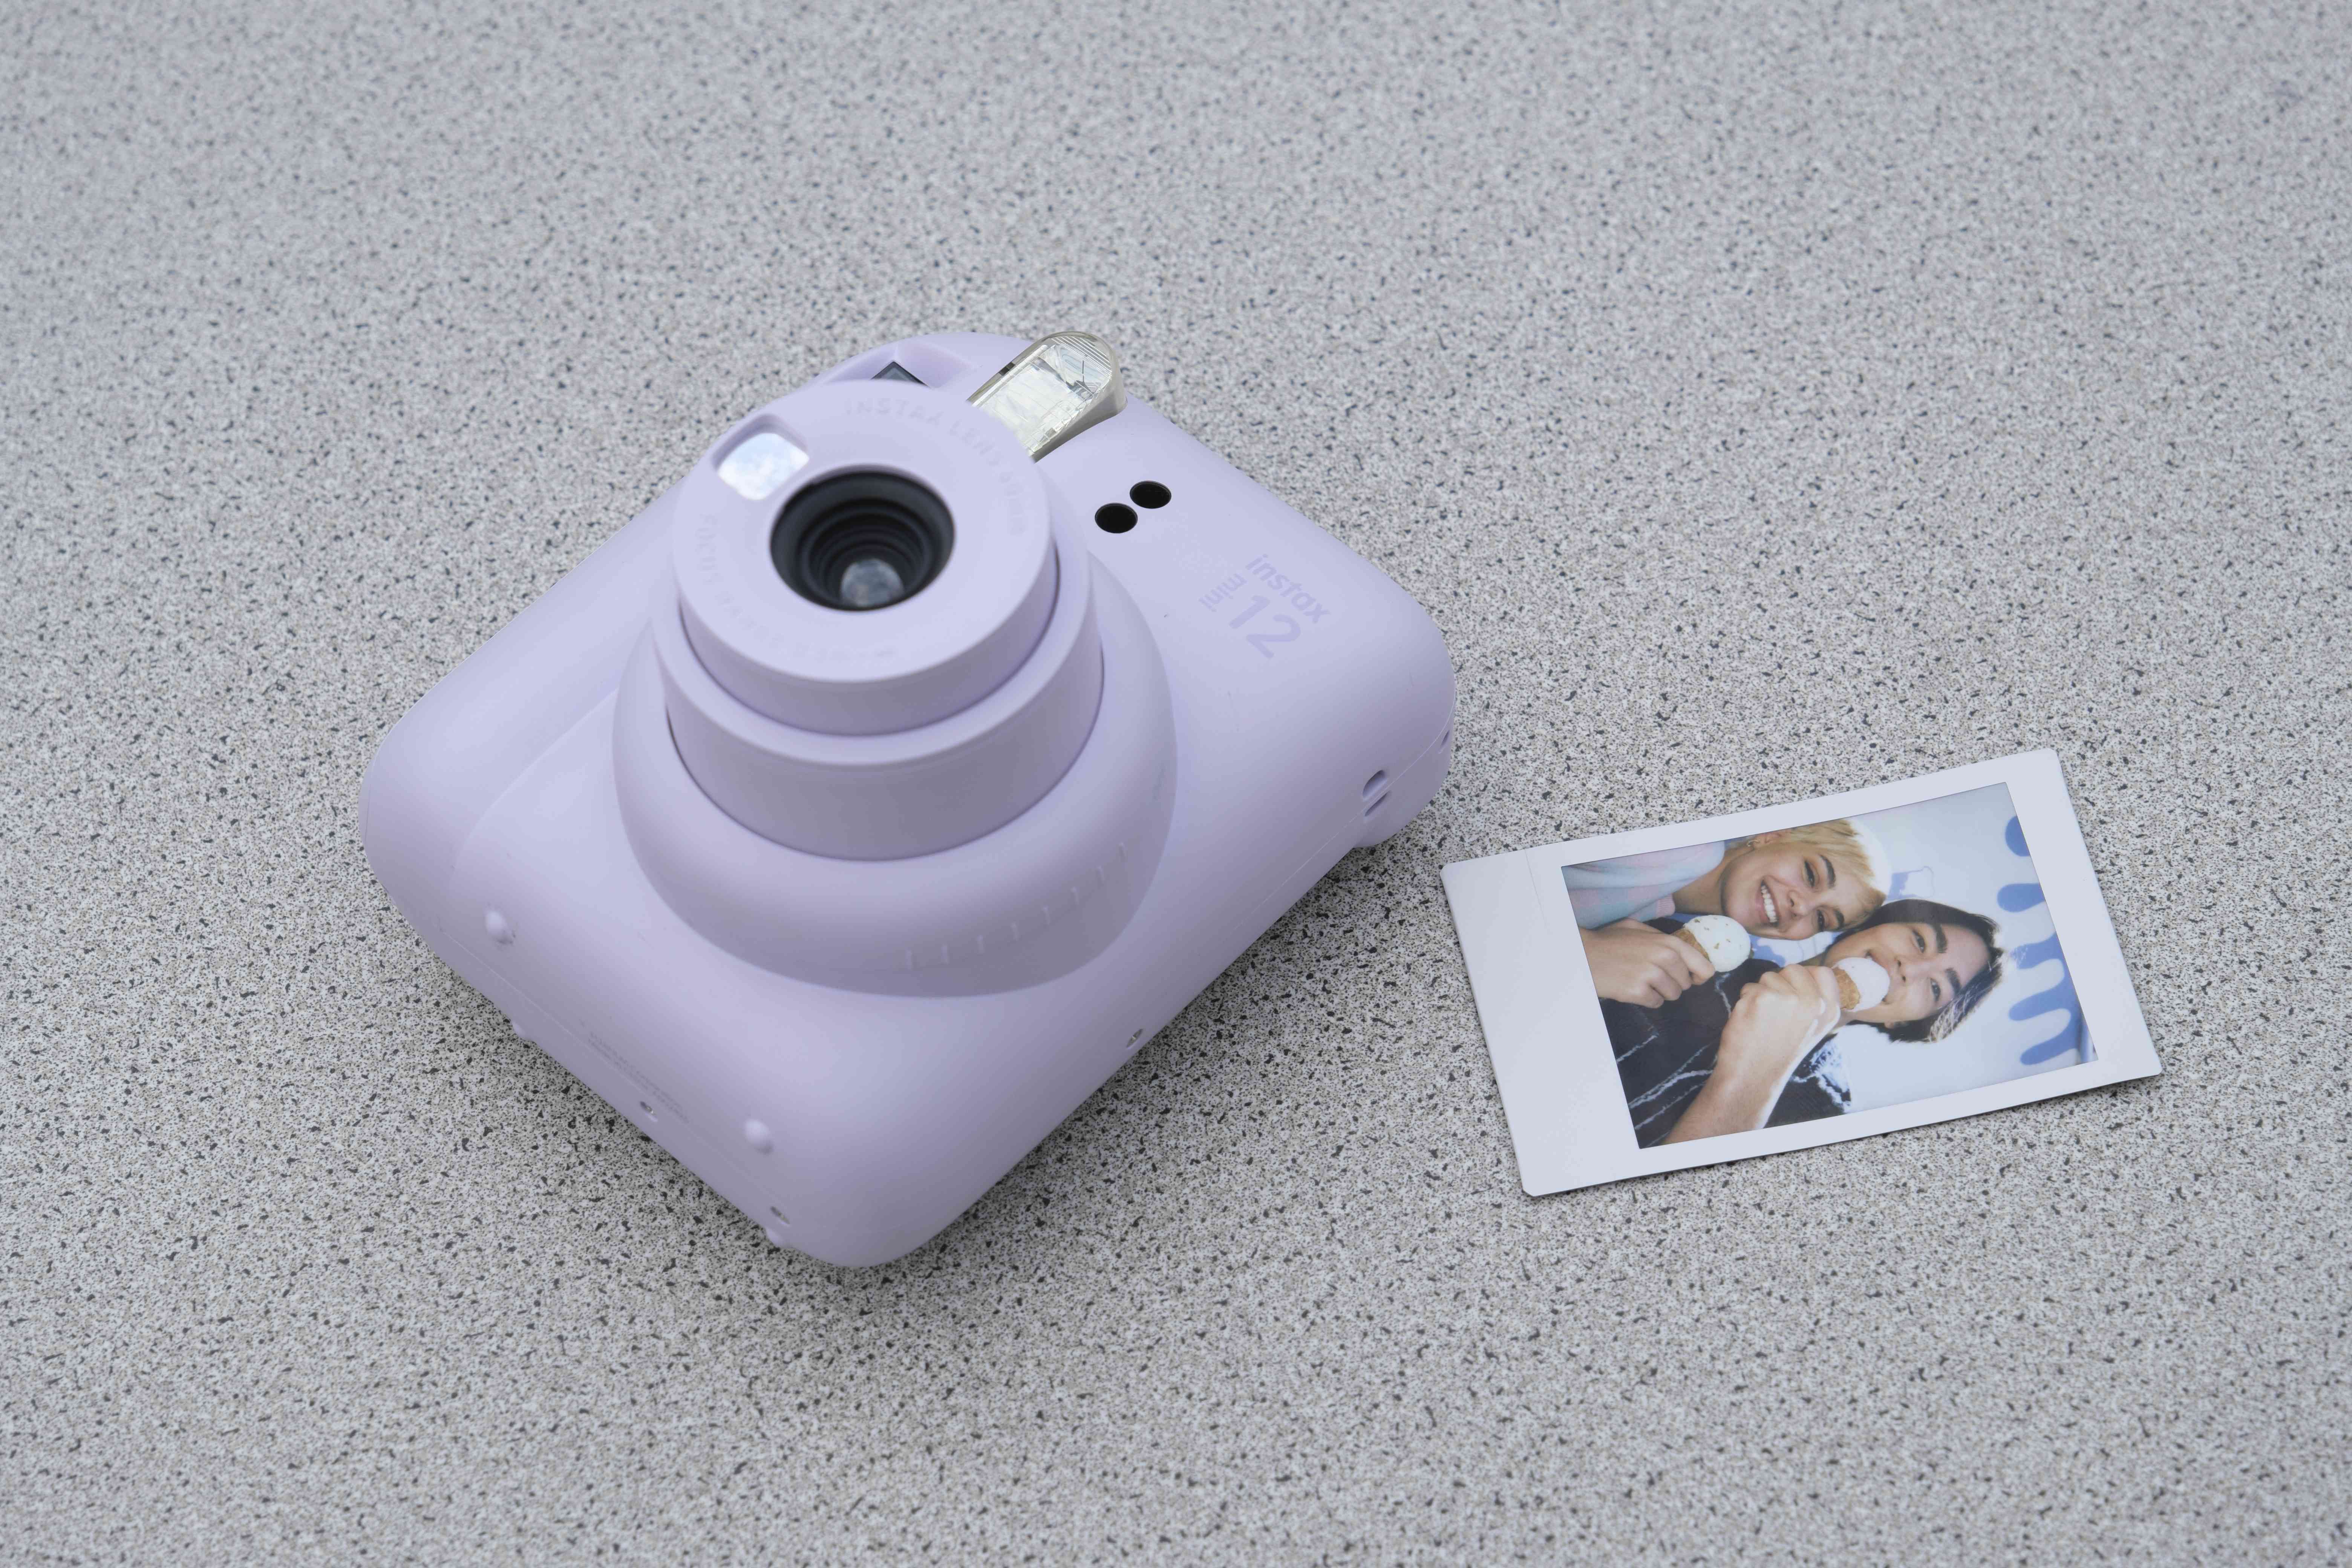 Fujifilm presenta sus nuevas y coloridas cámaras instantáneas Mini Instax 9